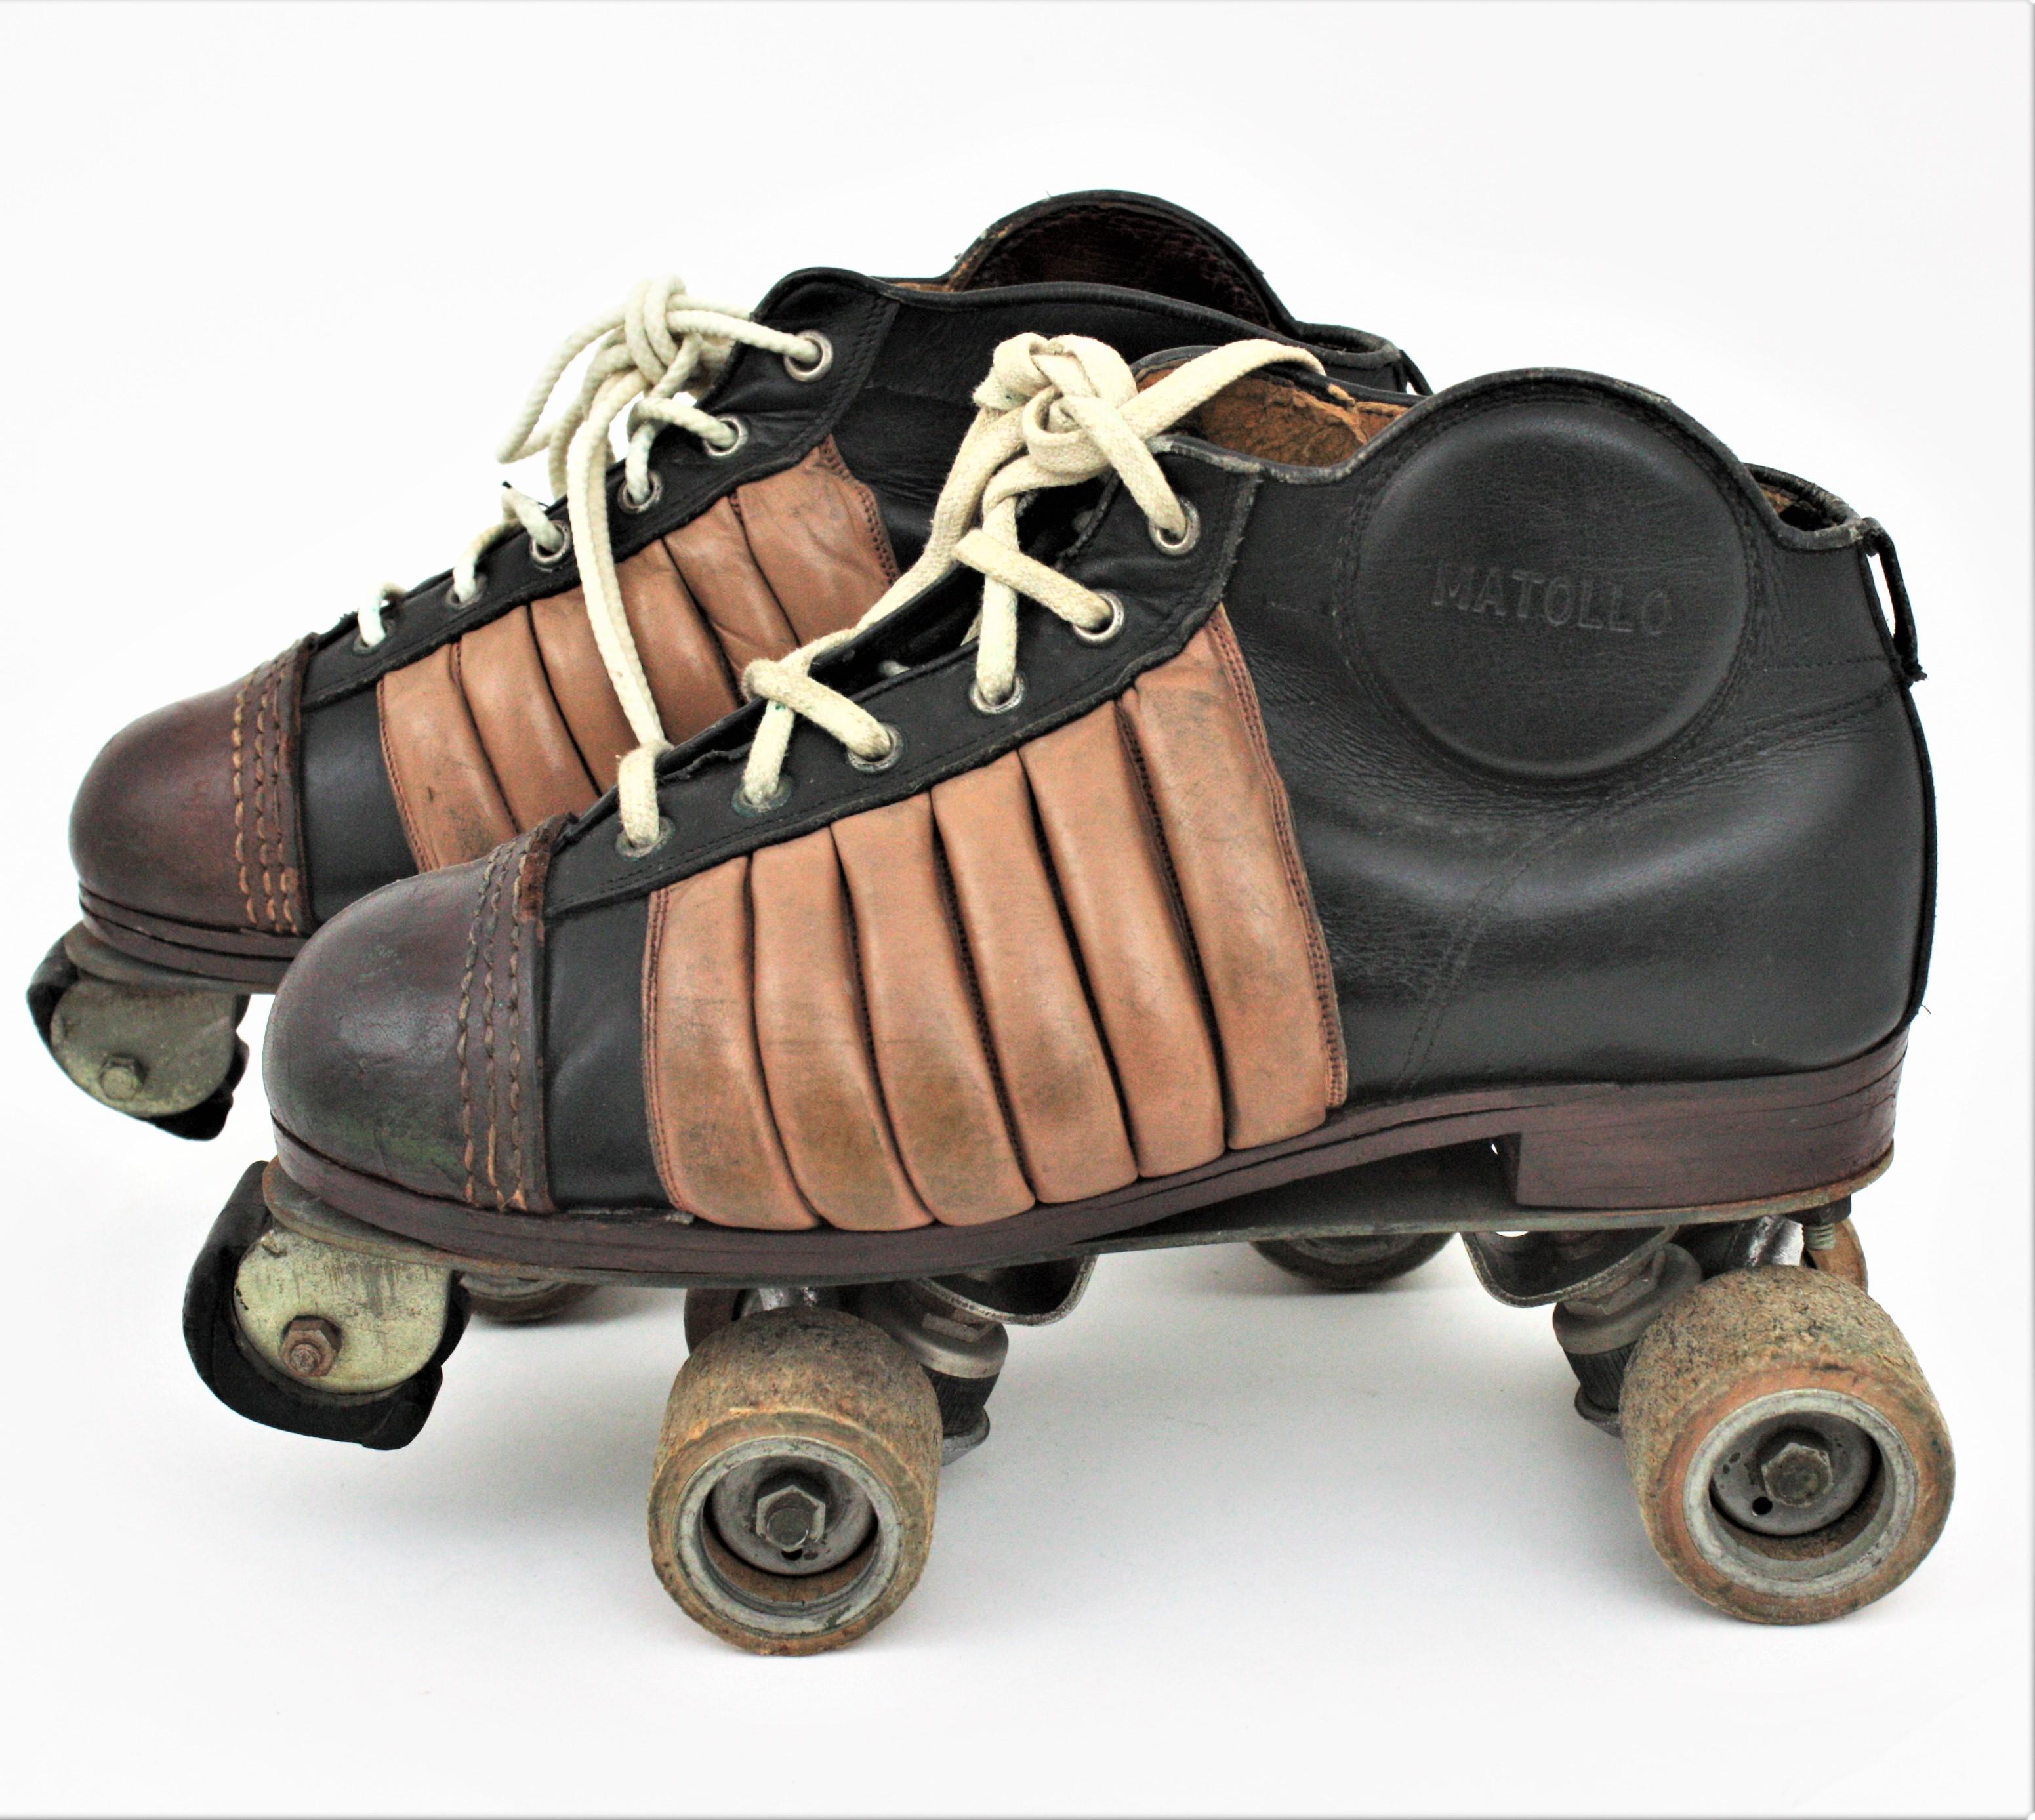 1950s roller skates